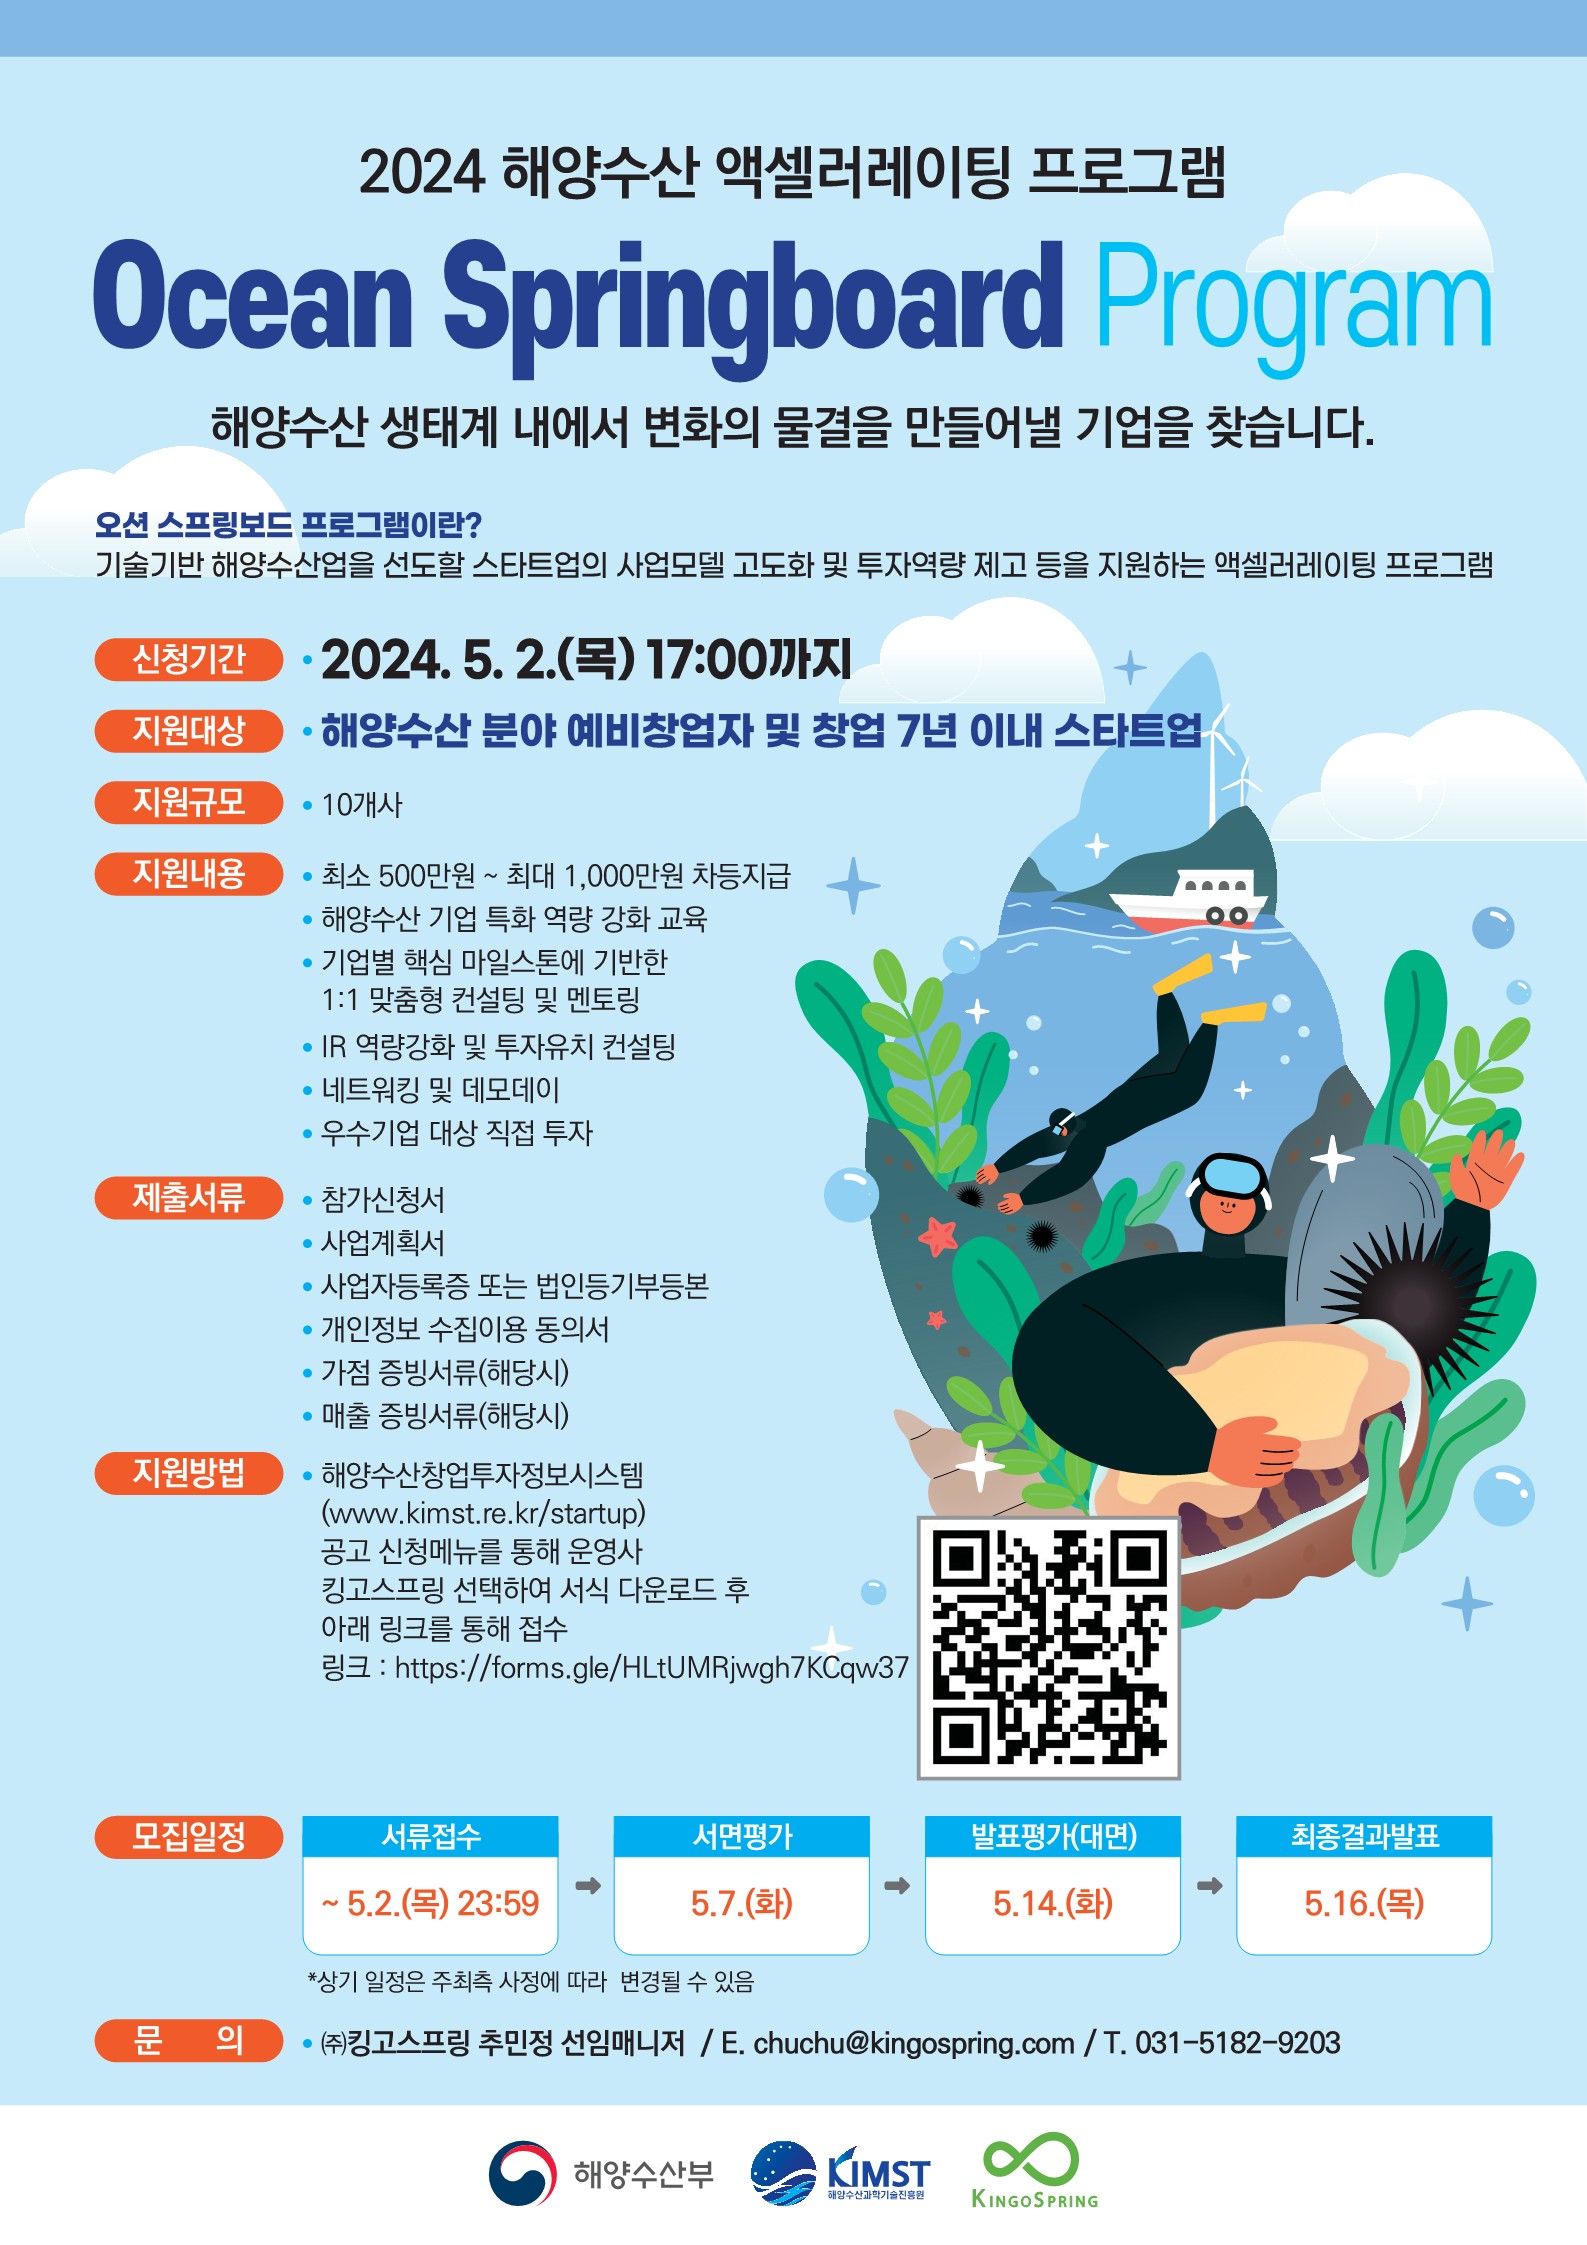 24 해양수산 액셀러레이터 오션스프링보드 프로그램 포스터.jpg